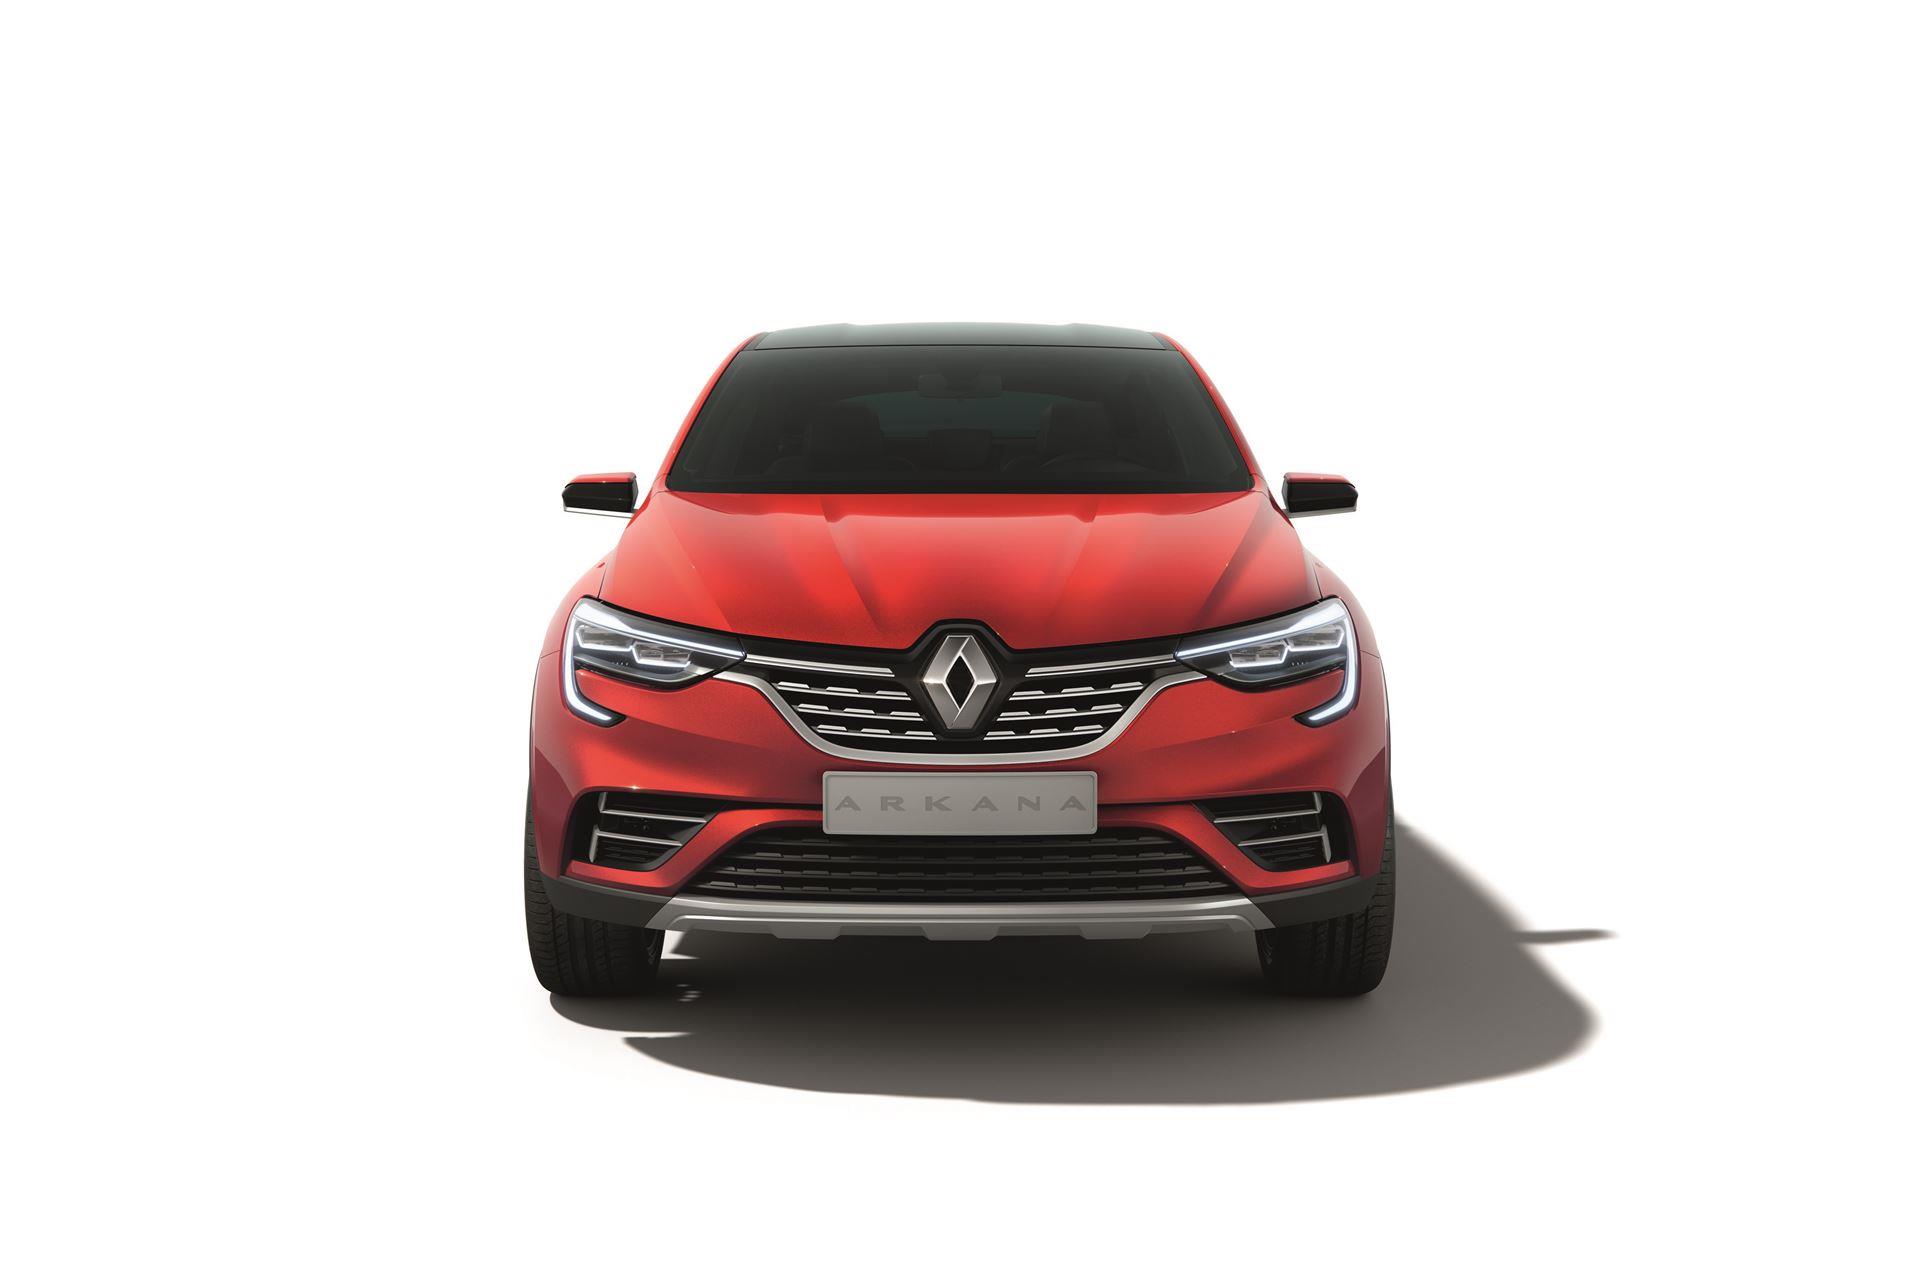 2018 Renault Arkana Show Car